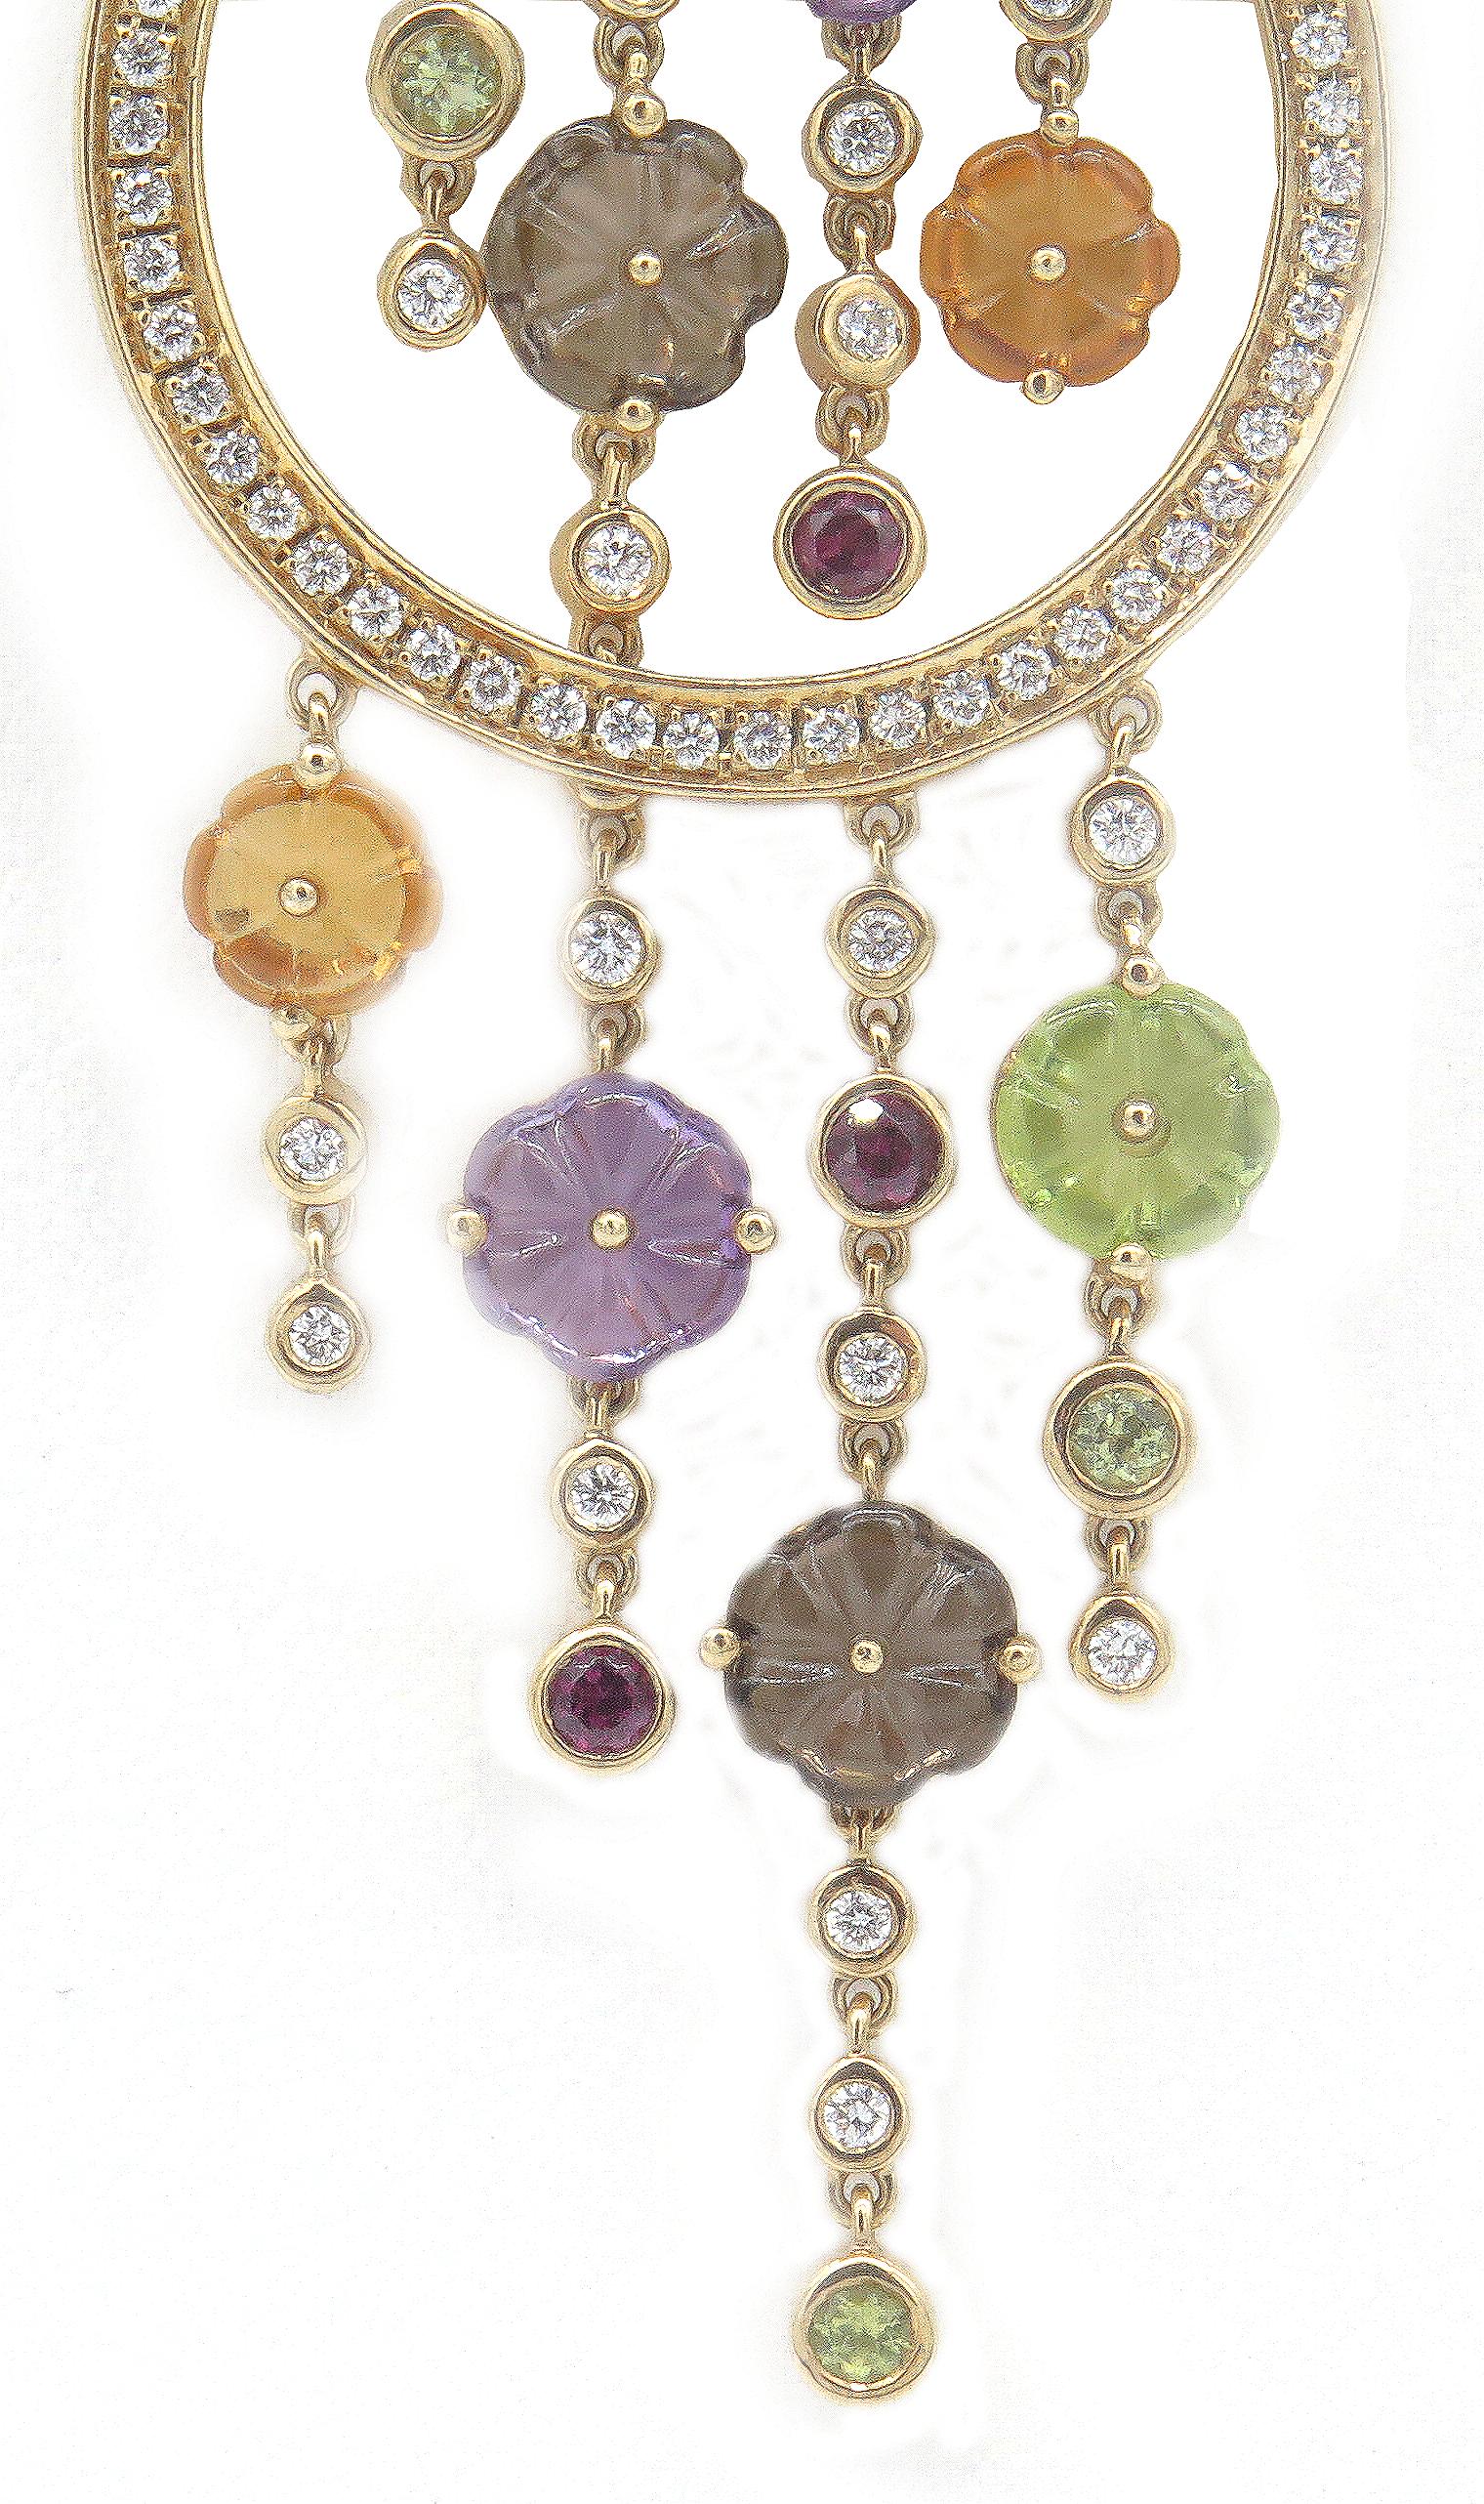 Dieser schöne und farbenfrohe Di Modolo-Halskettenanhänger aus der Tempia-Kollektion wird in Italien hergestellt. Dieser Anhänger aus 18-karätigem Gelbgold besteht aus einer Kombination von Edelsteinen und Halbedelsteinen, die sich zu einem